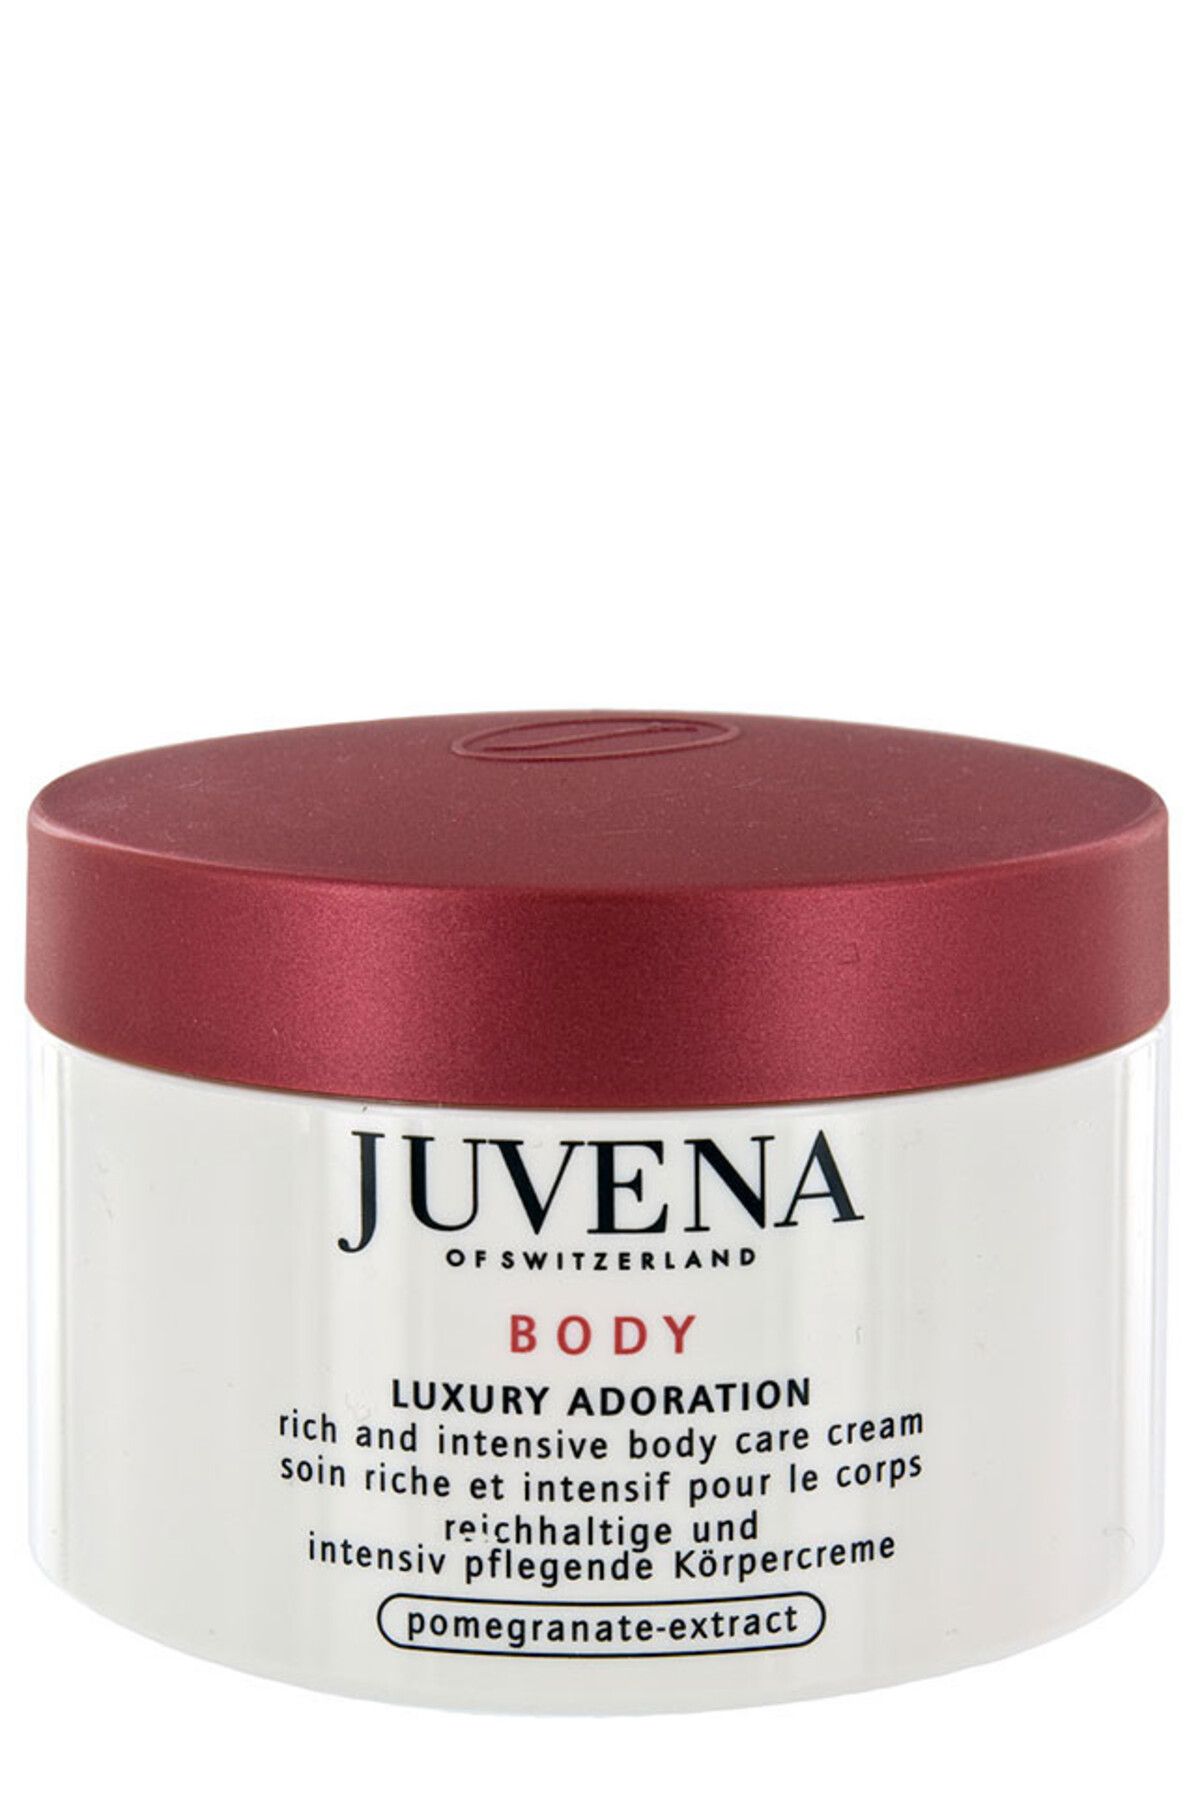 Juvena Body Adoration Luxury Adoration - Kuru,Sert Ciltler İçin Sıkılaştırıcı,Tahrişleri Onarıcı Krem 200ml